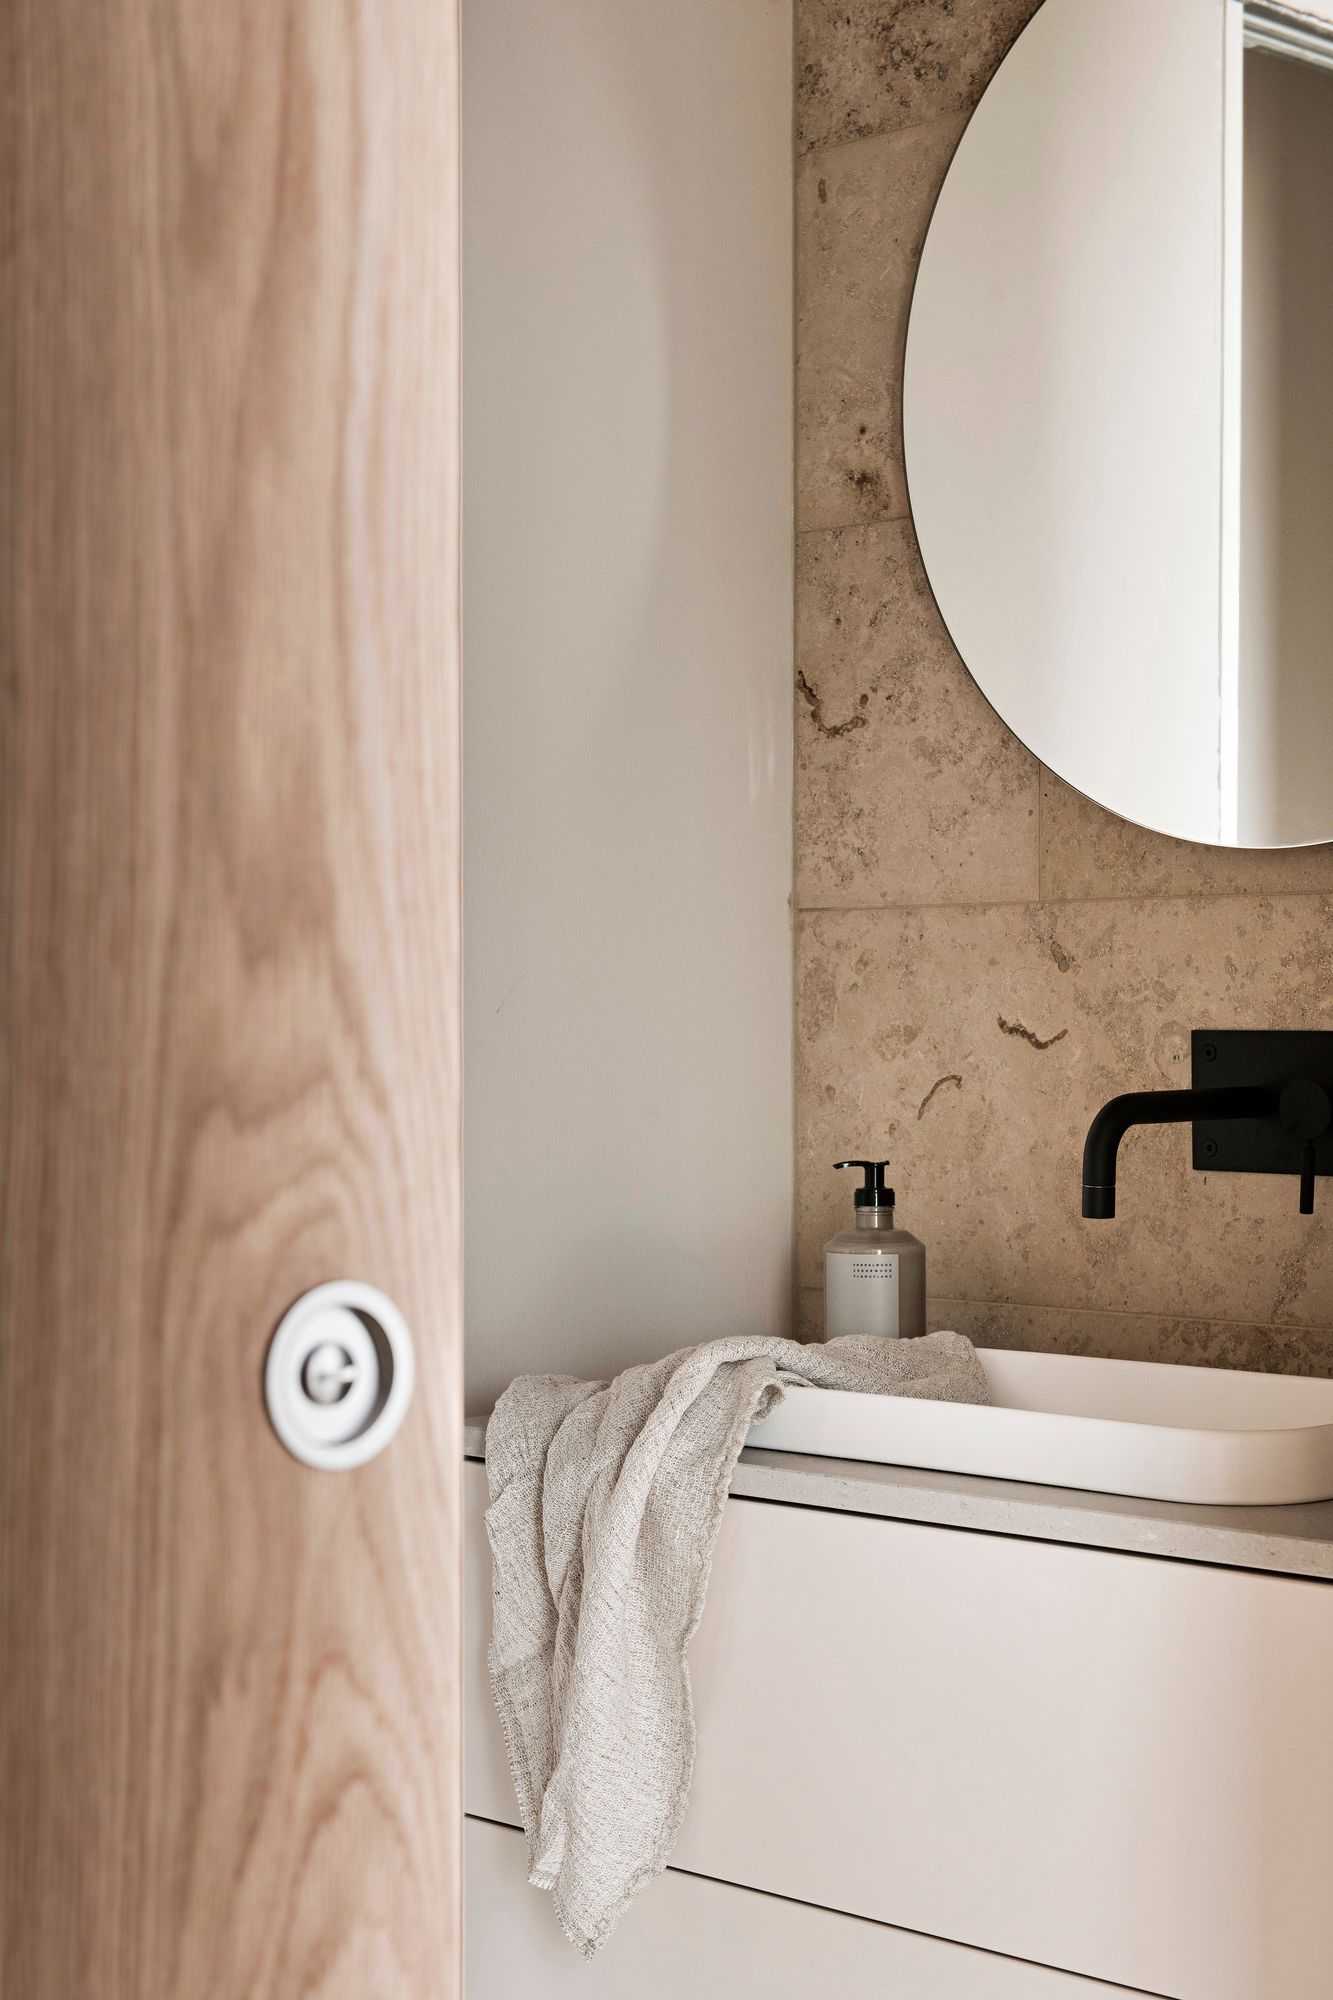  Maanläheiset sävyt kylpyhuoneessa vievät ajatukset rauhoittaviin kylpylöihin. Beigen sävyinen kalkkikivilaatta on yhdistetty valkoisten seinien kanssa, mutta toimii loistavasti laajanakin pintana. Liukuovi viimeistelee eleettömän tyylin. Kohde 9 Villa Nordic Stories.